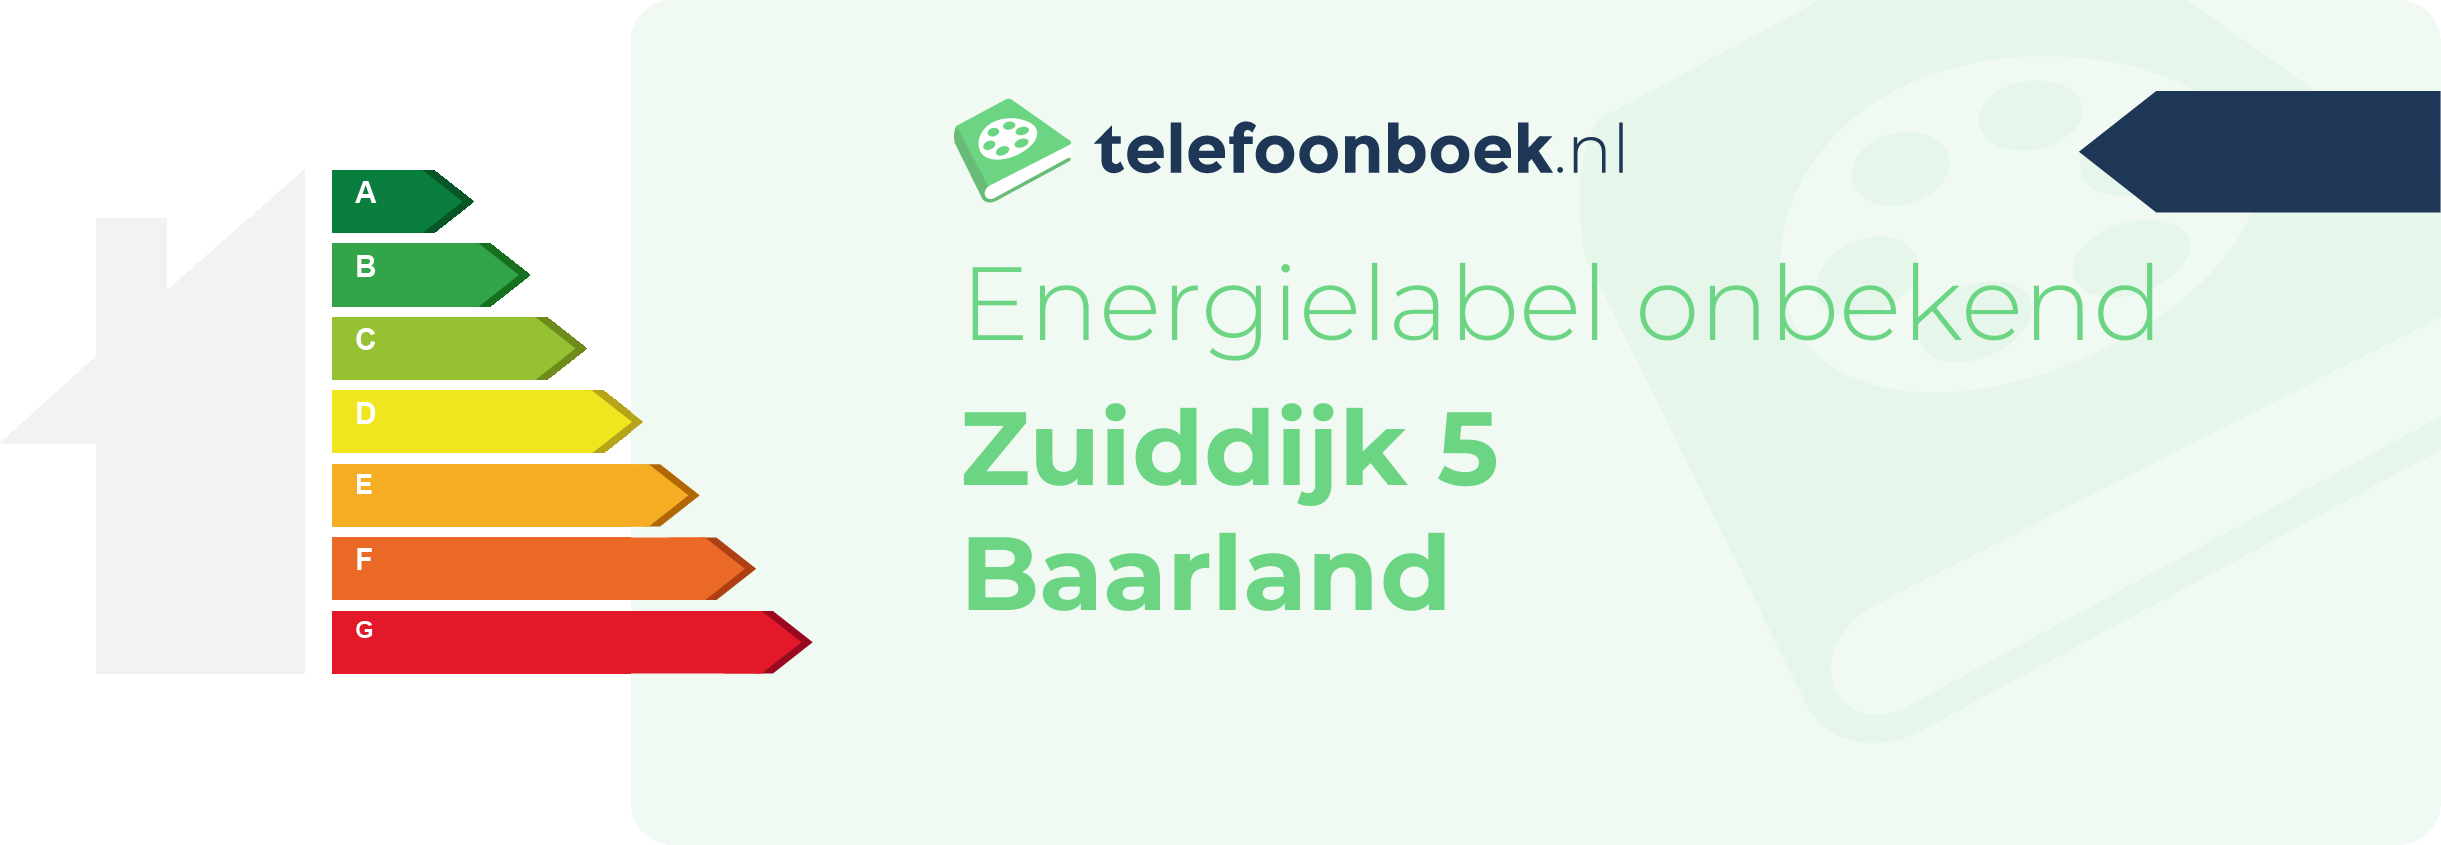 Energielabel Zuiddijk 5 Baarland